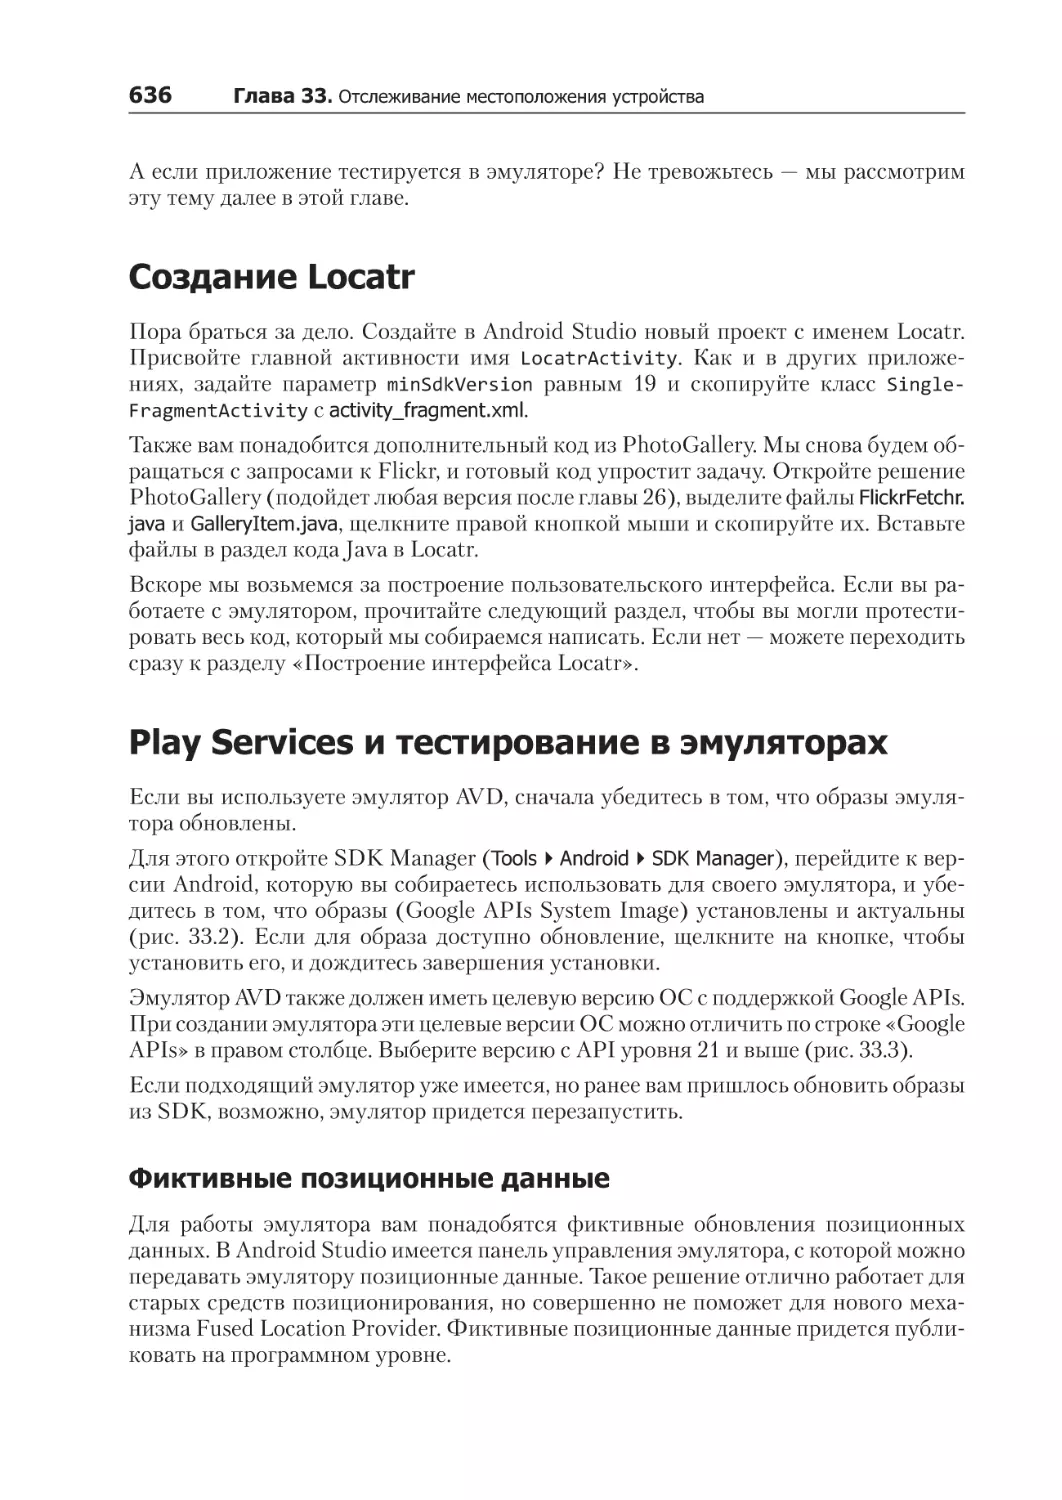 Создание Locatr
Play Services и тестирование в эмуляторах
Фиктивные позиционные данные